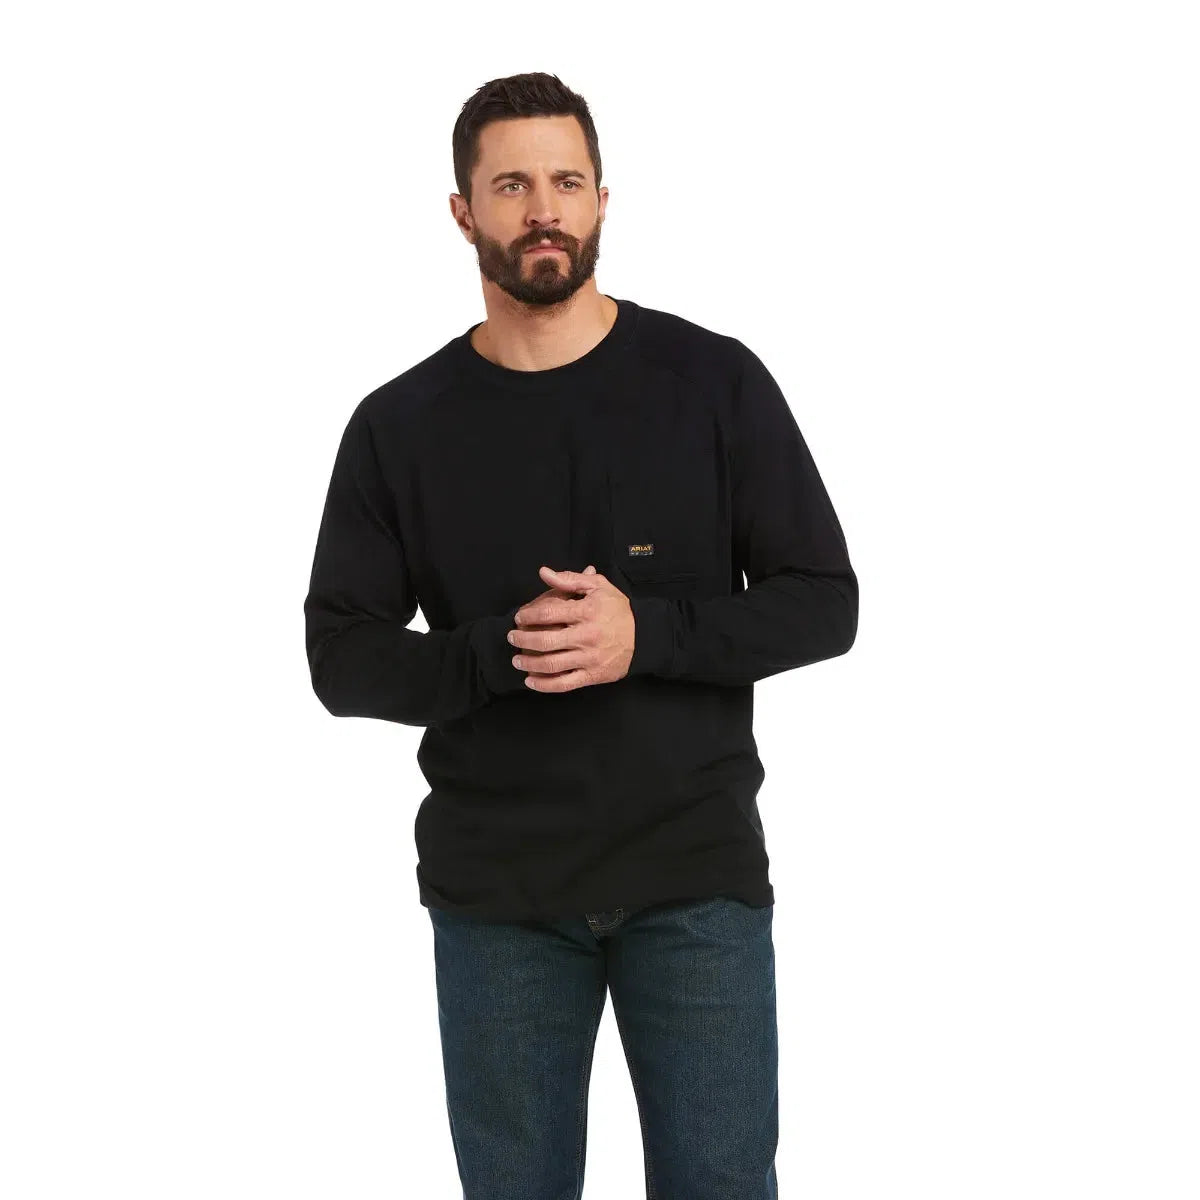 Ariat Roughneck sweater